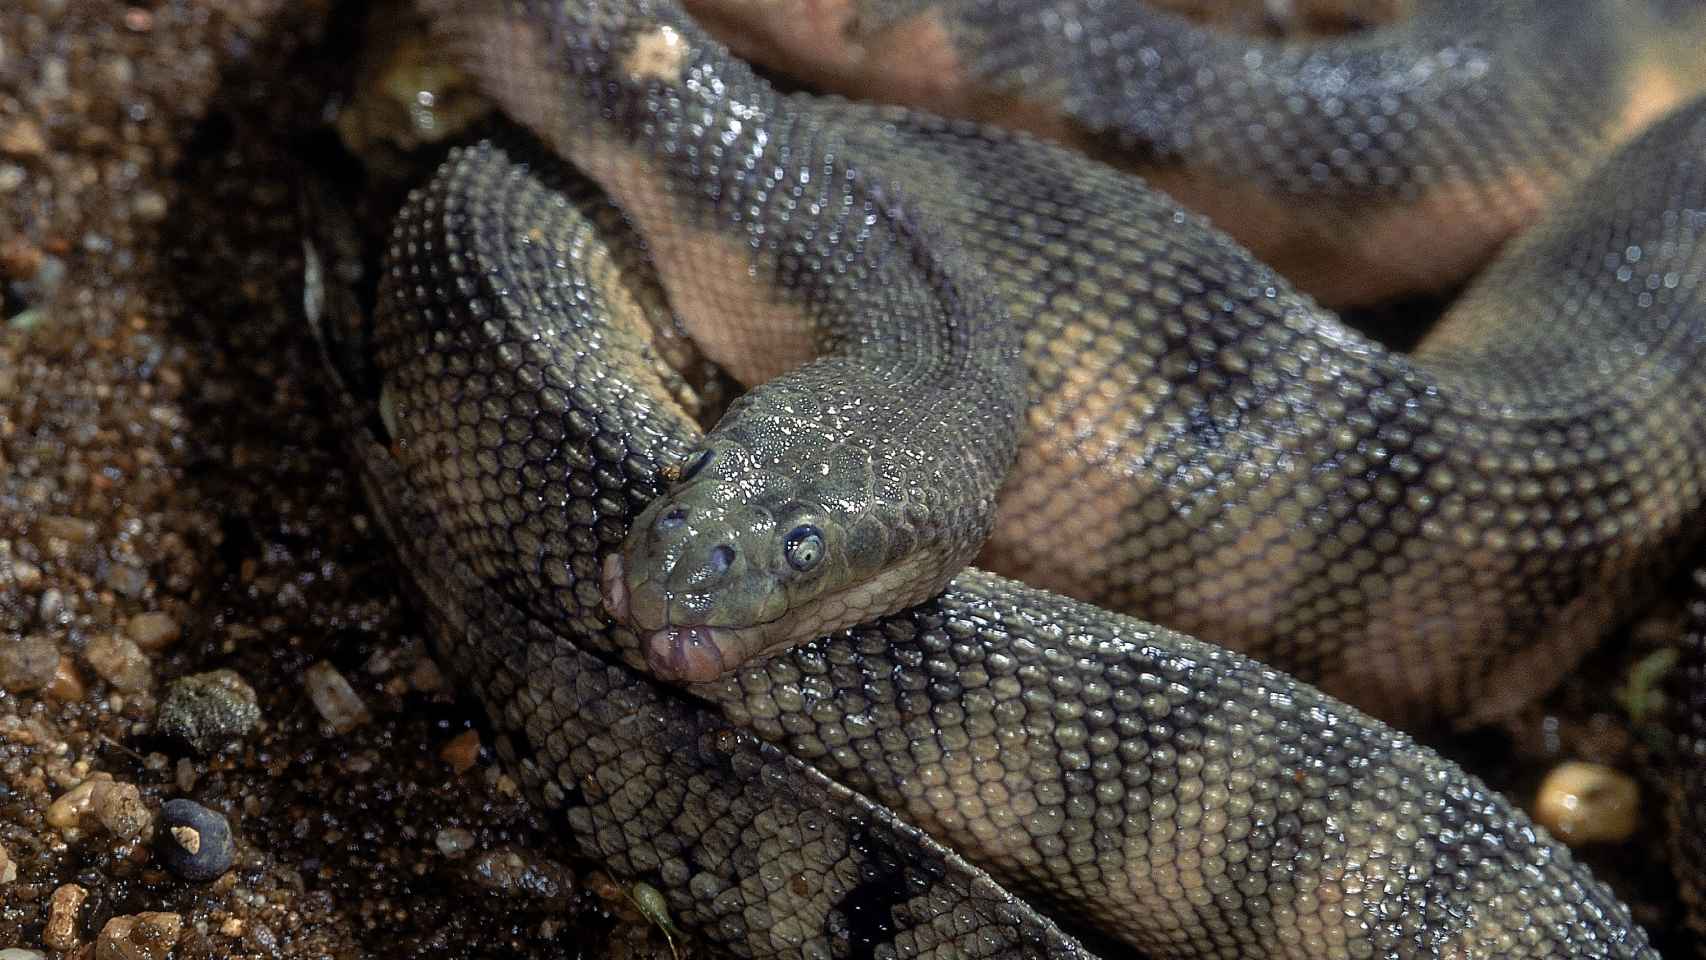 Enhydrina schistosa, la considerada serpiente más venenosa del mundo